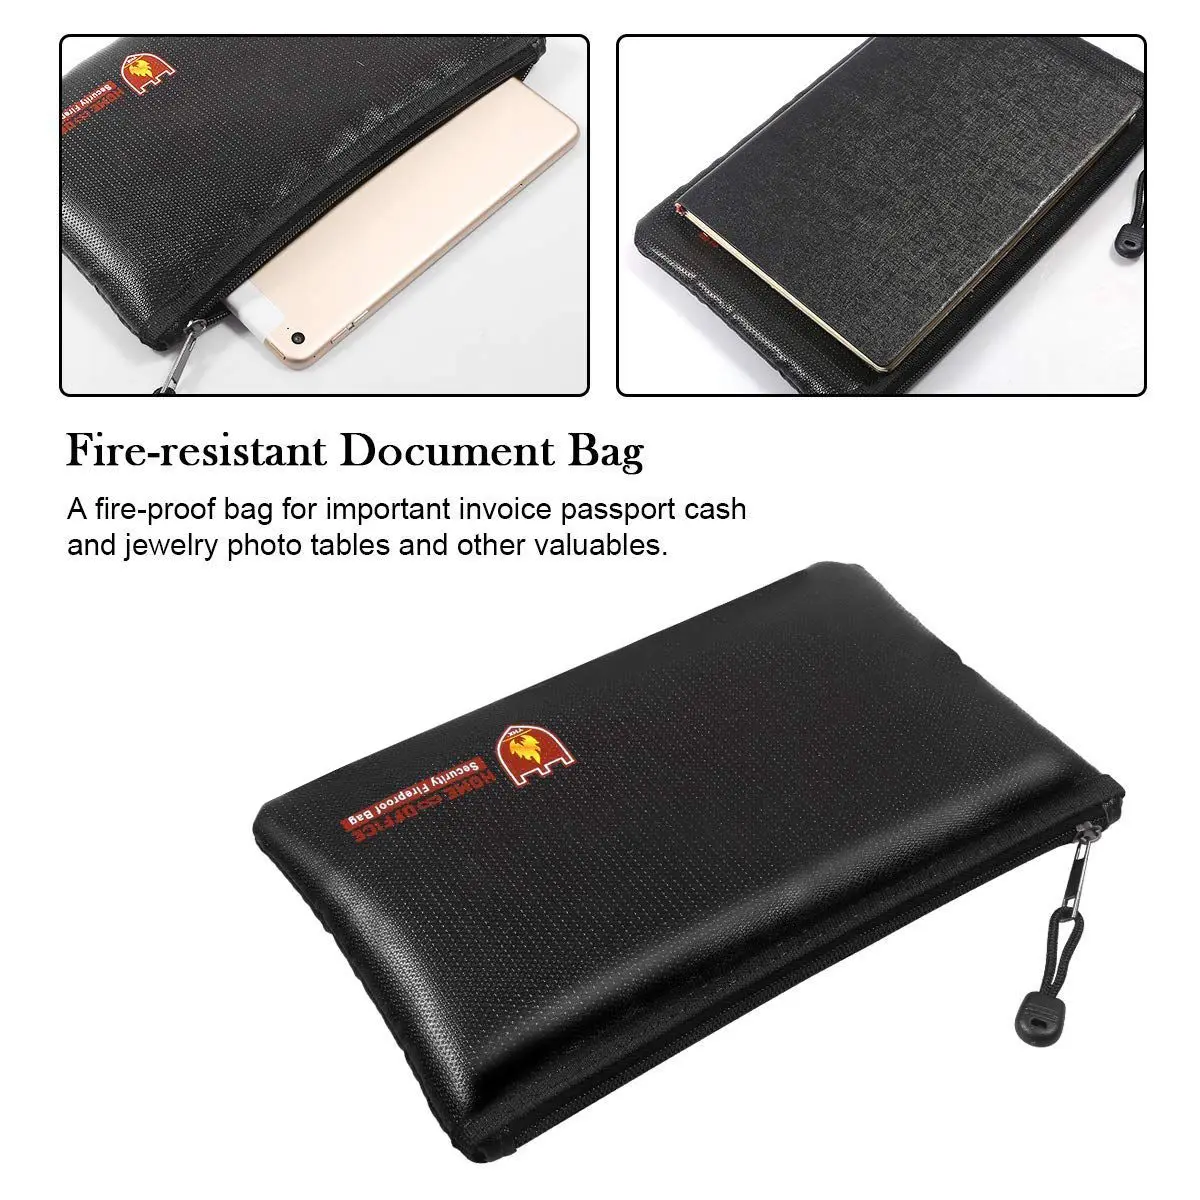 Противопожарные документ сумки, Водонепроницаемый и огнеупорный сумка с Противопожарные молния для iPad, деньги, ювелирные изделия, паспорт